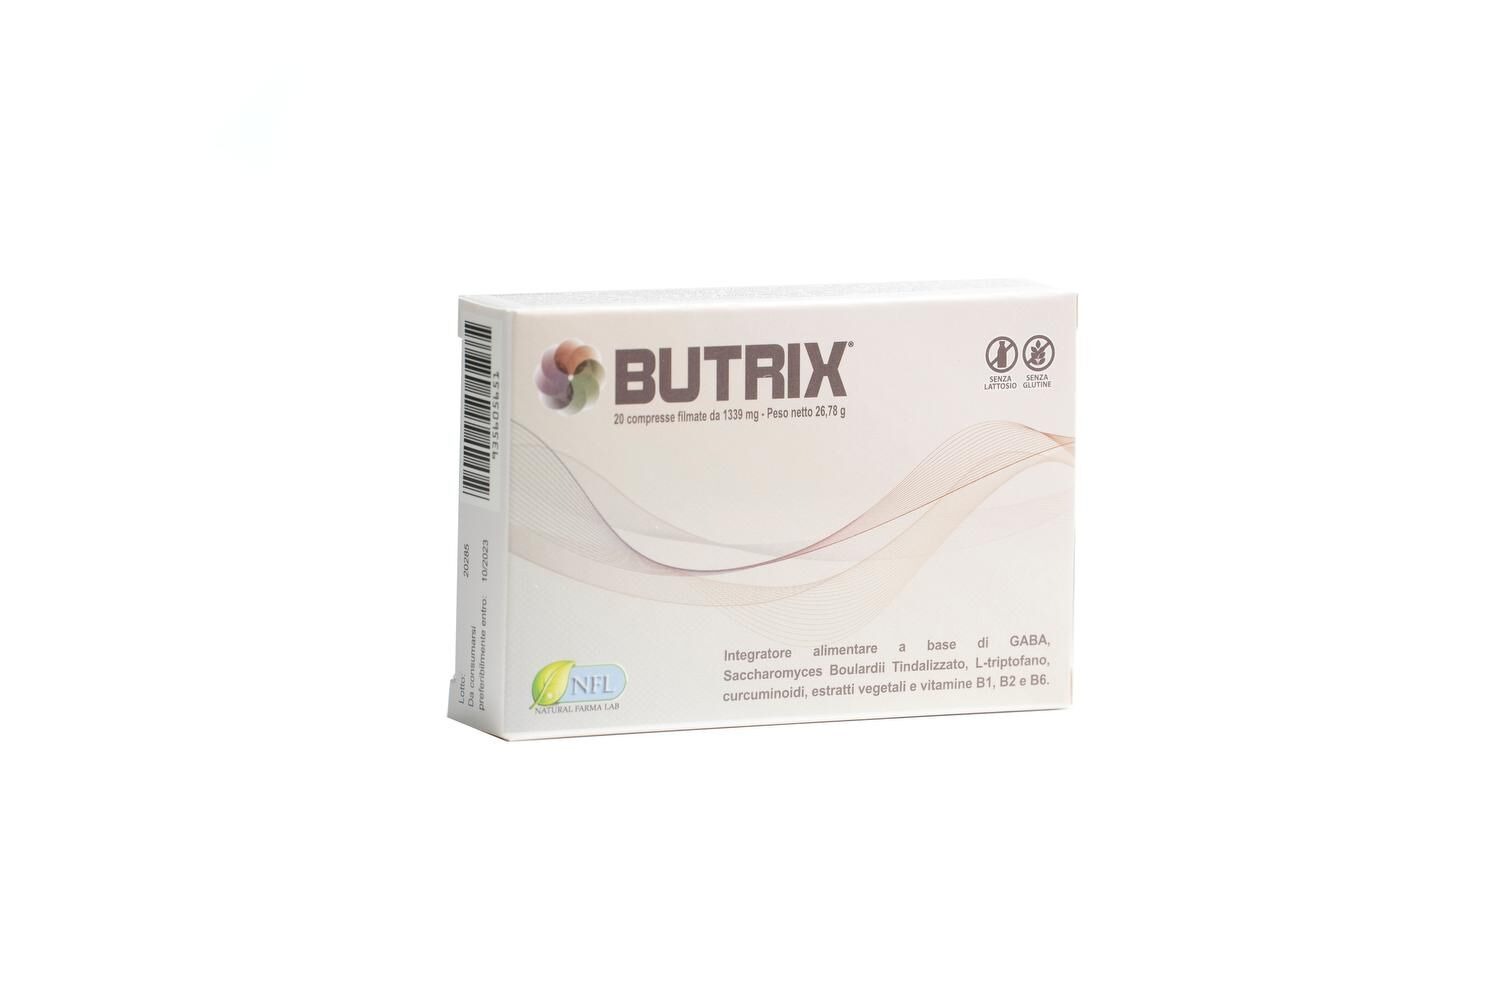 natural farma lab srl butrix per migliorare la salute, integratore alimentare, confezione da 20 compresse